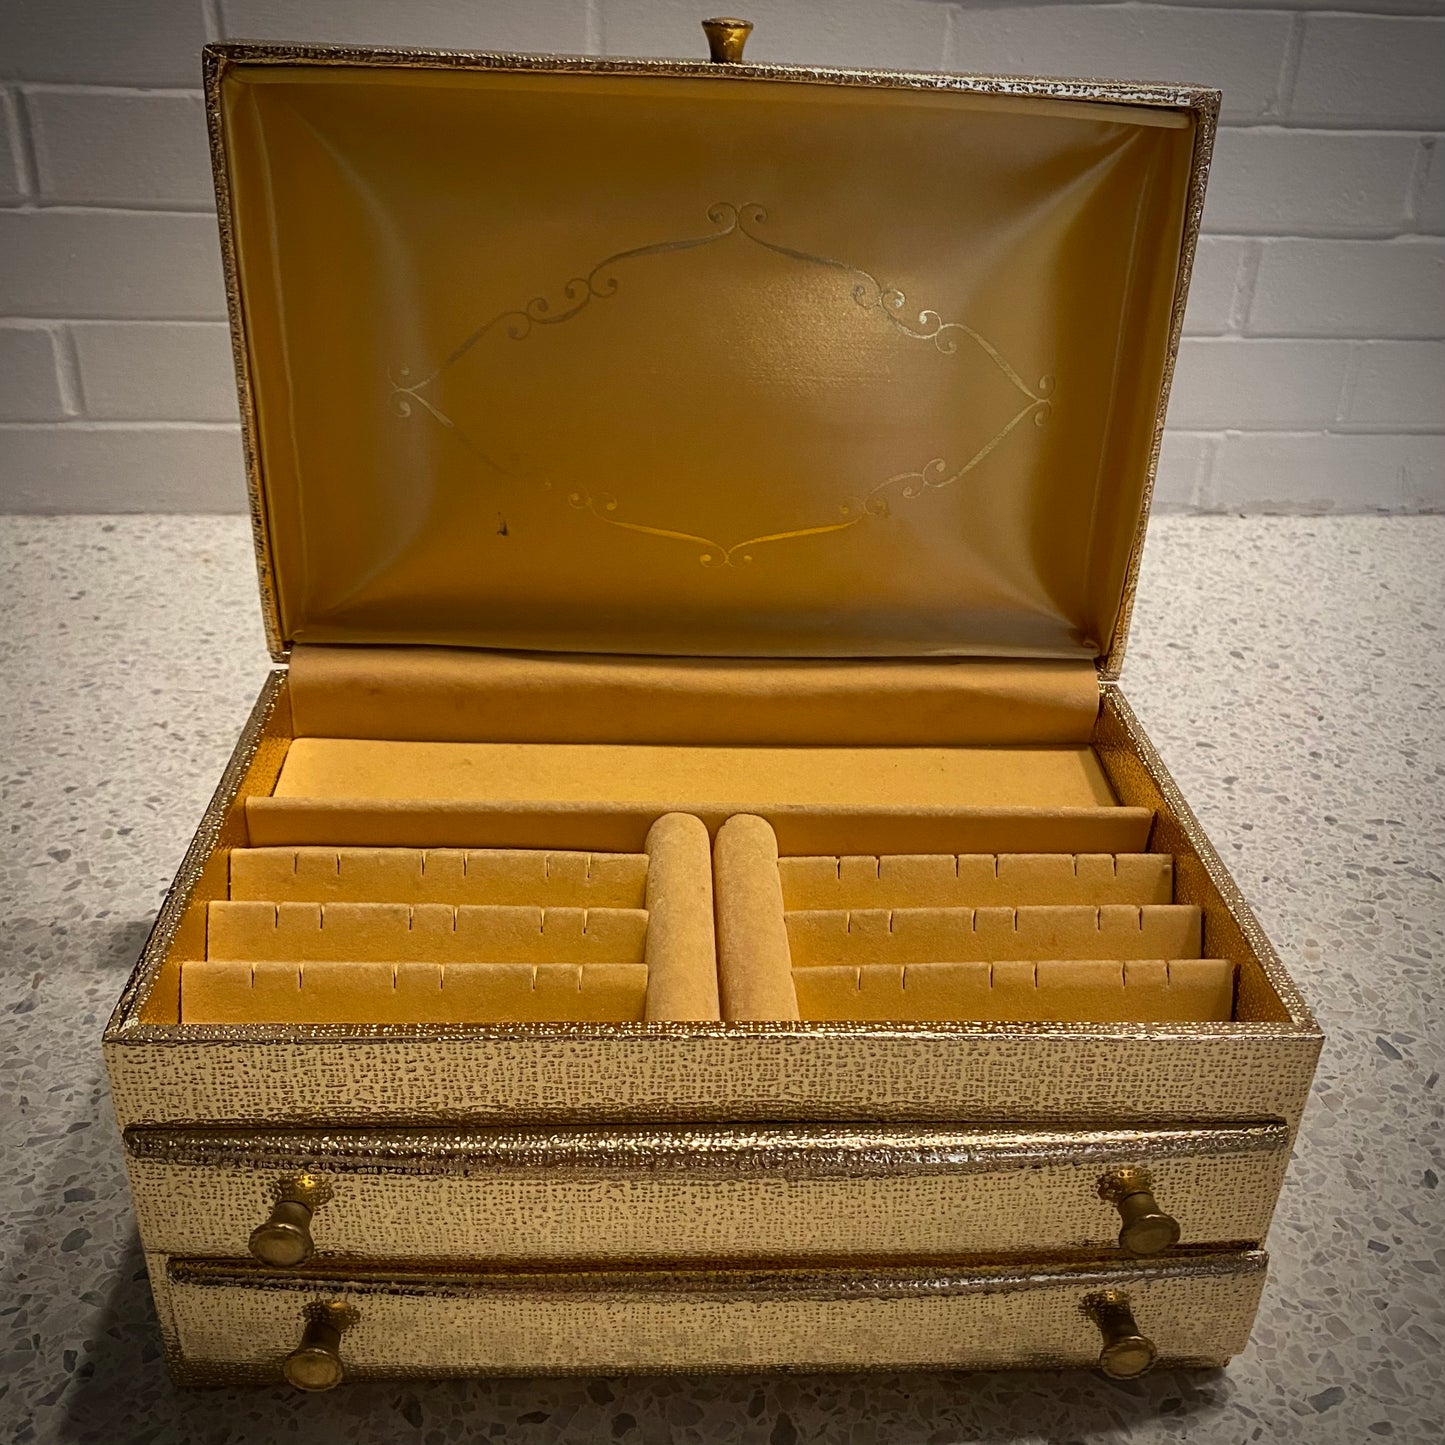 1970s Buxton Jewelry Box